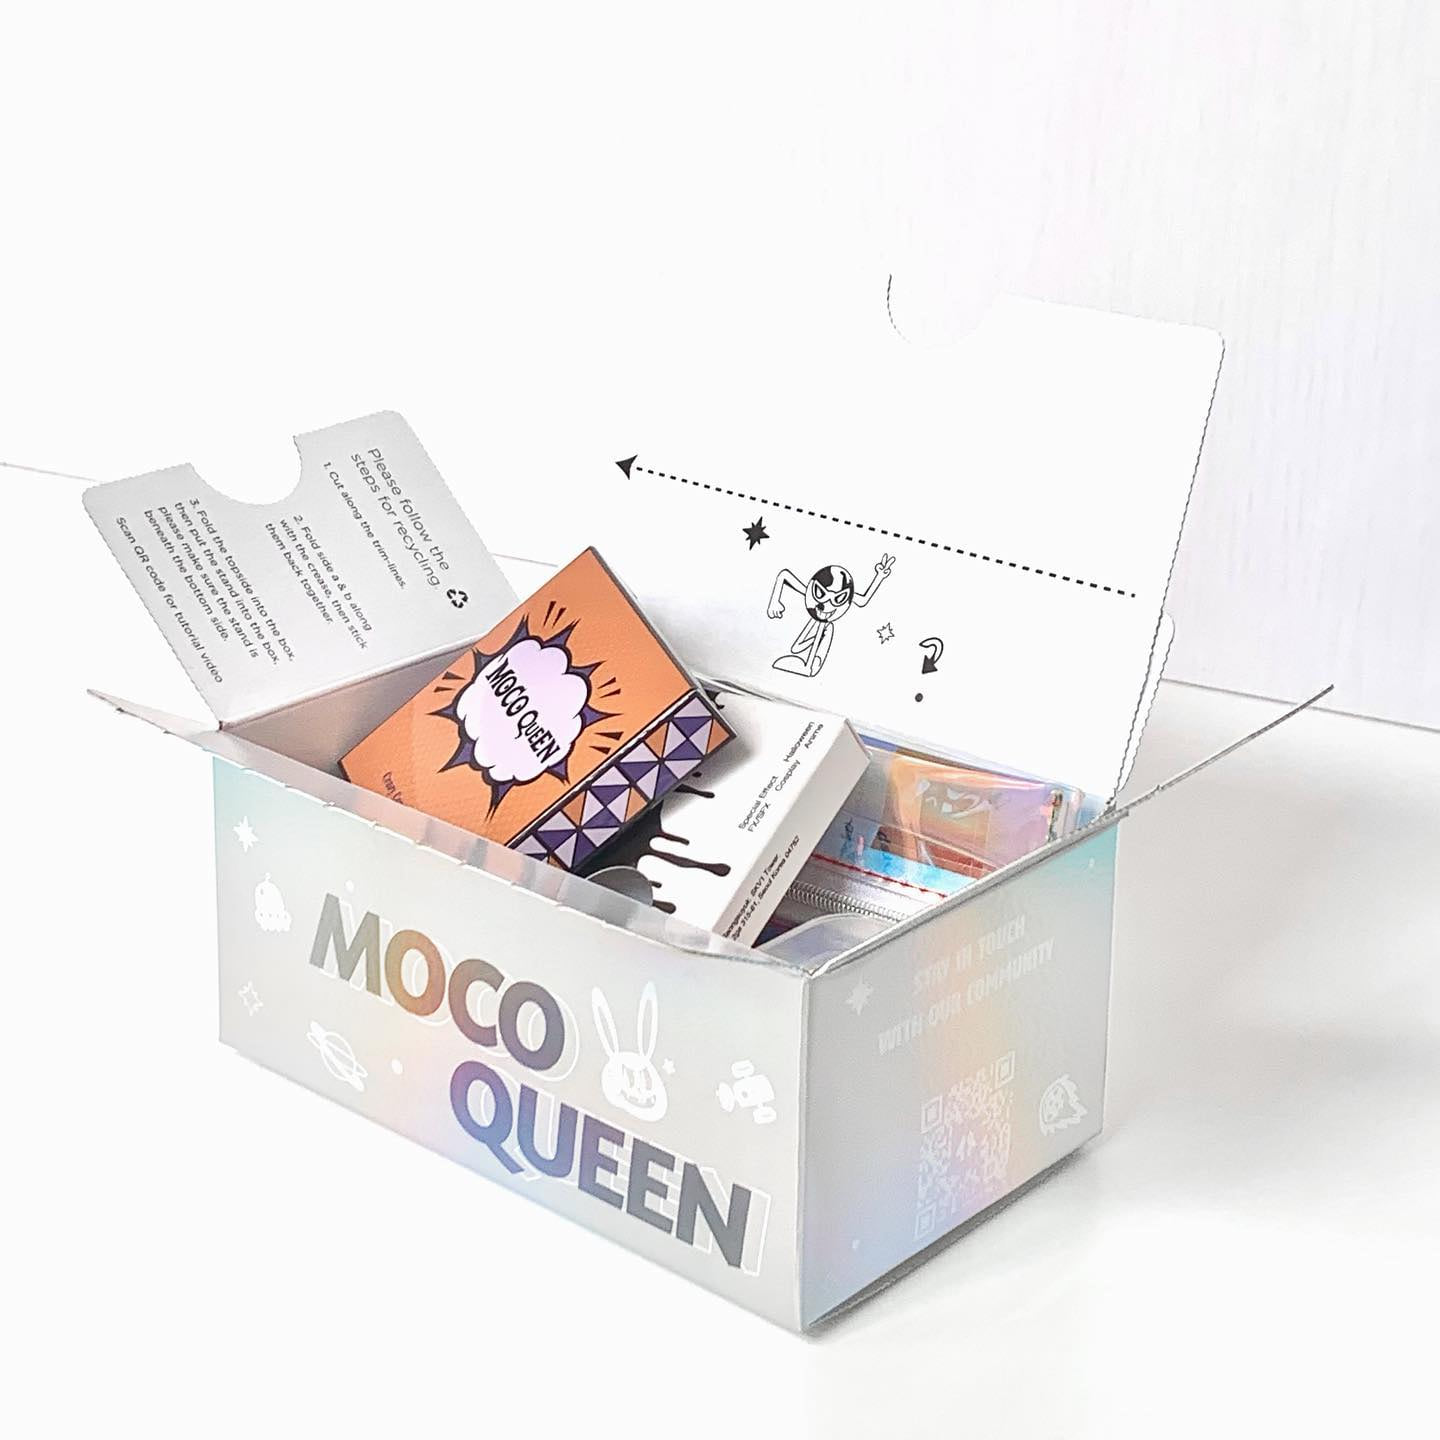 Moco Queen Review